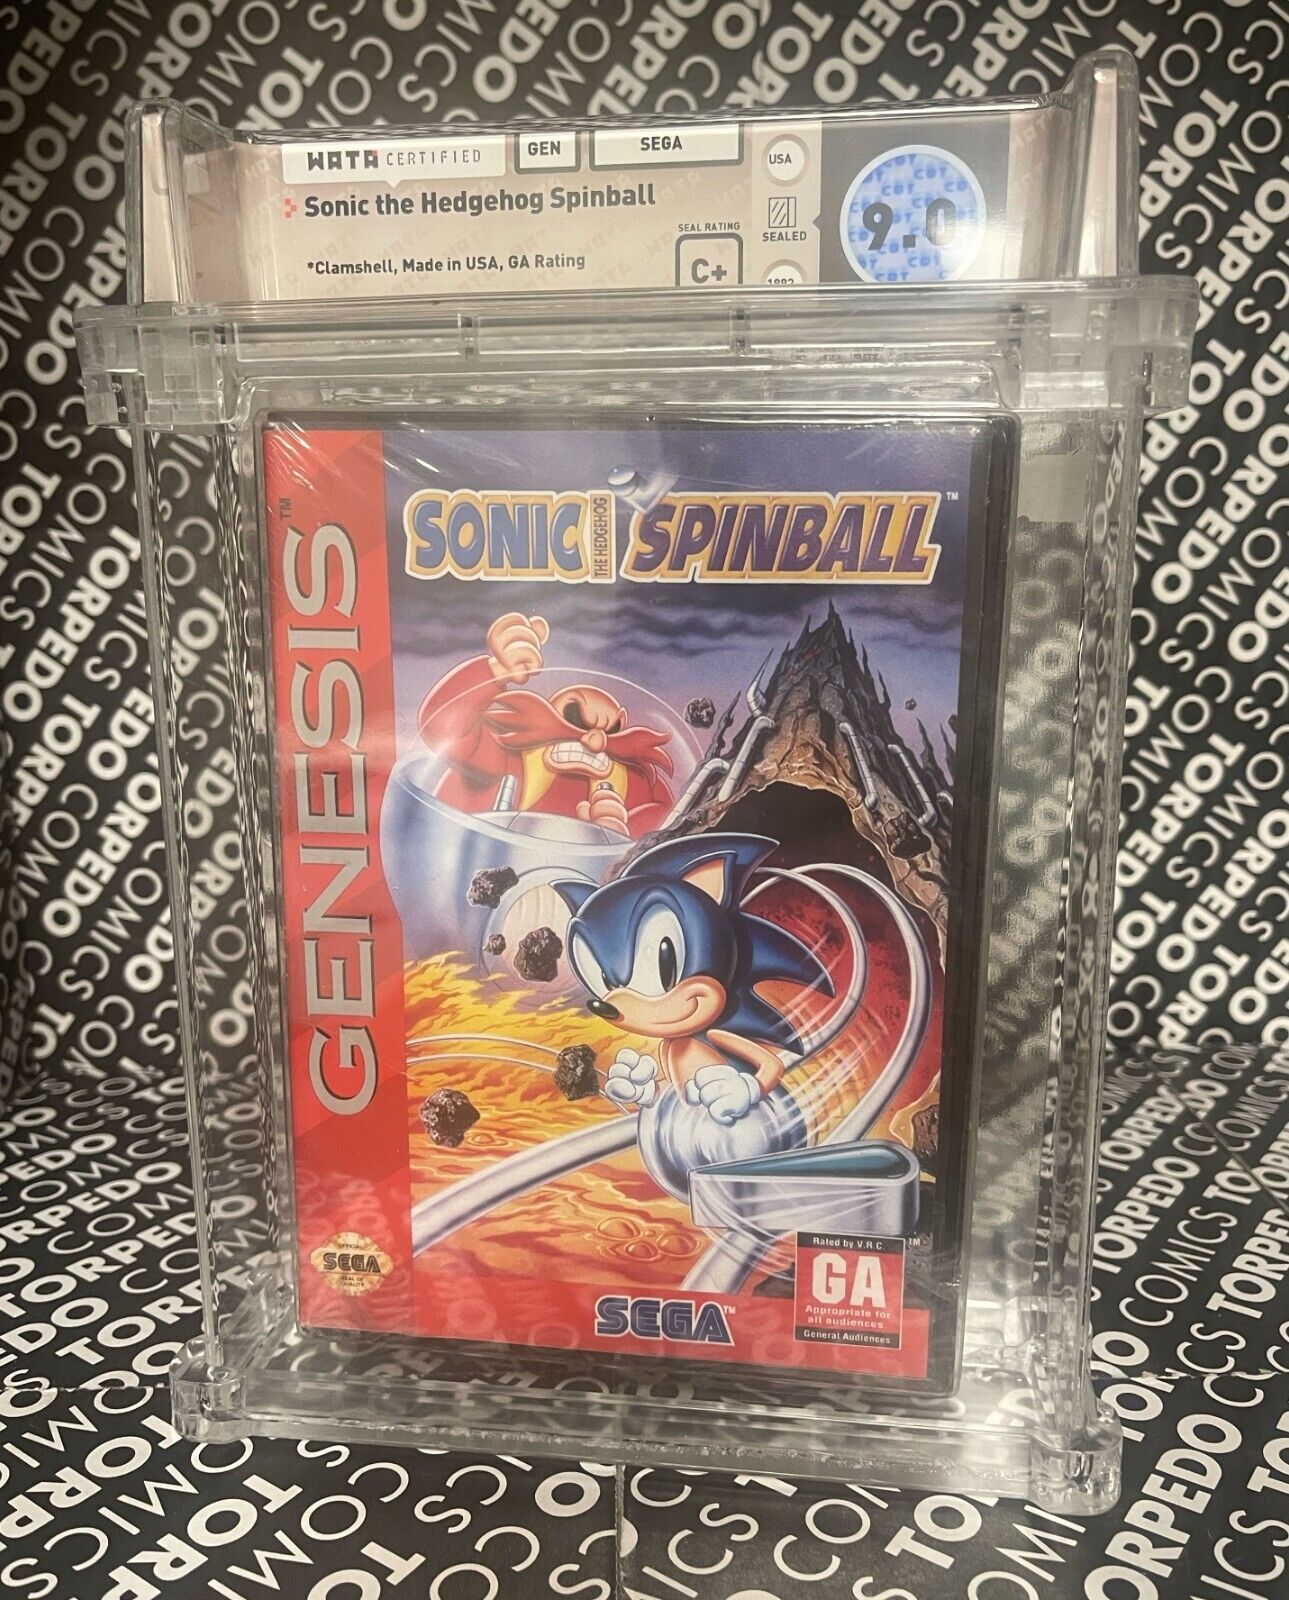 Sonic the Hedgehog Spinball Sega Genesis WATA Certified 9.0 Sealed 1993